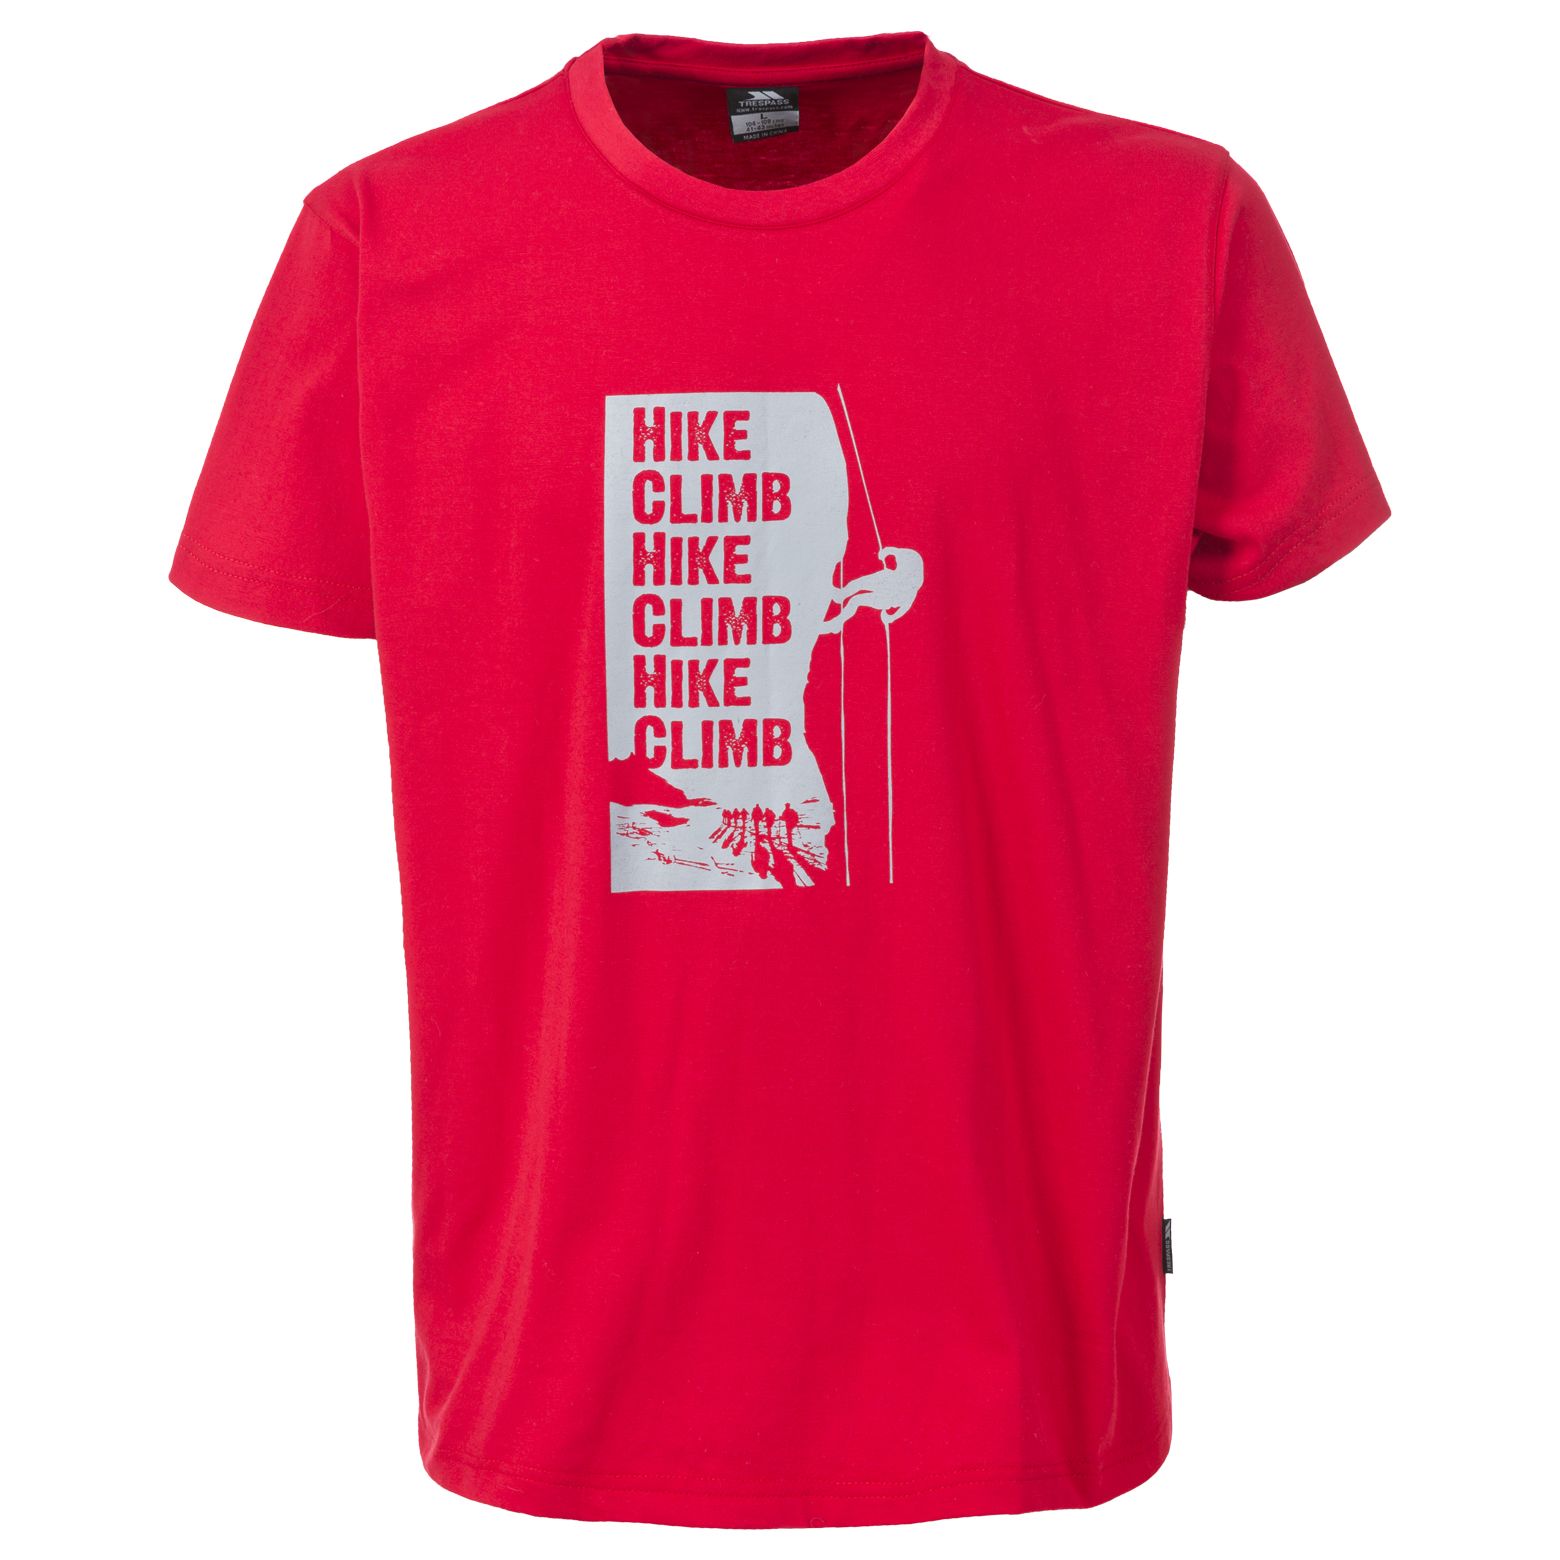 Tramore Mens Printed Casual T-shirt